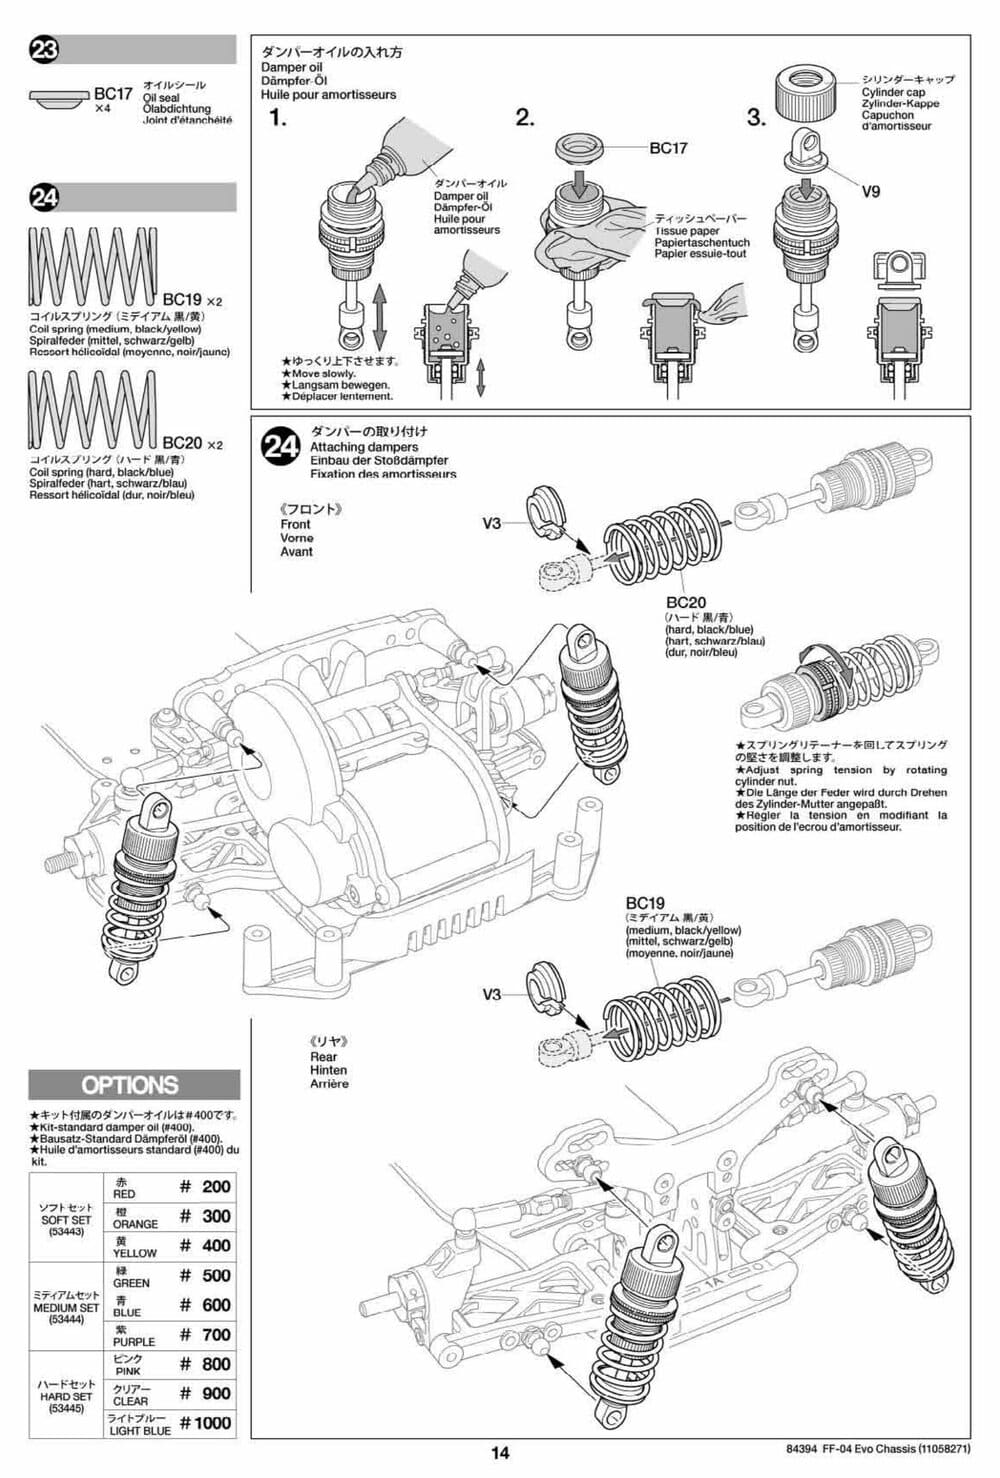 Tamiya - FF-04 Evo Chassis - Manual - Page 14